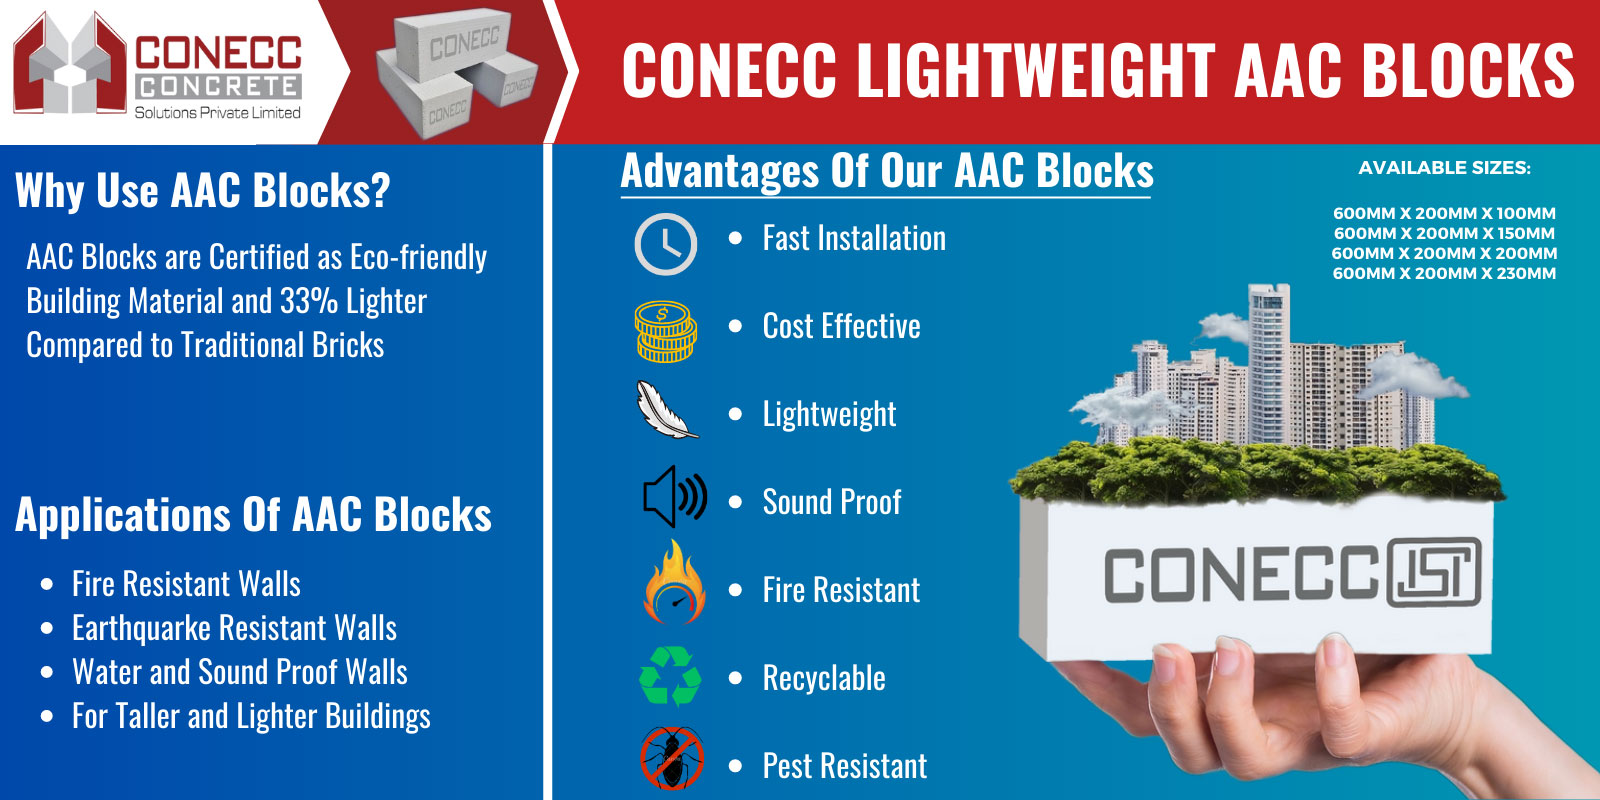 Conecc AAC Blocks benefits